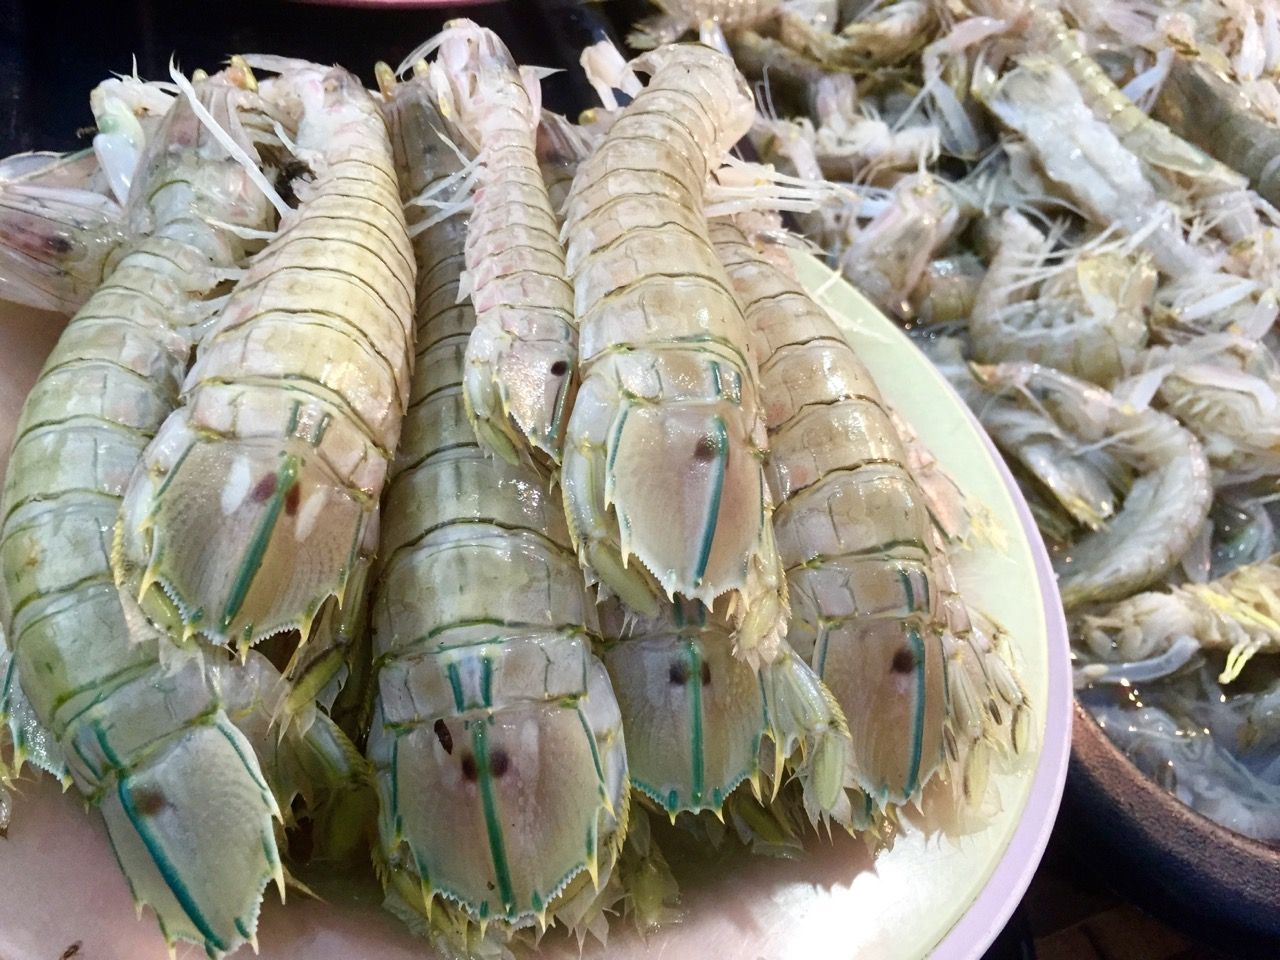 Tray of fresh mantis prawns.